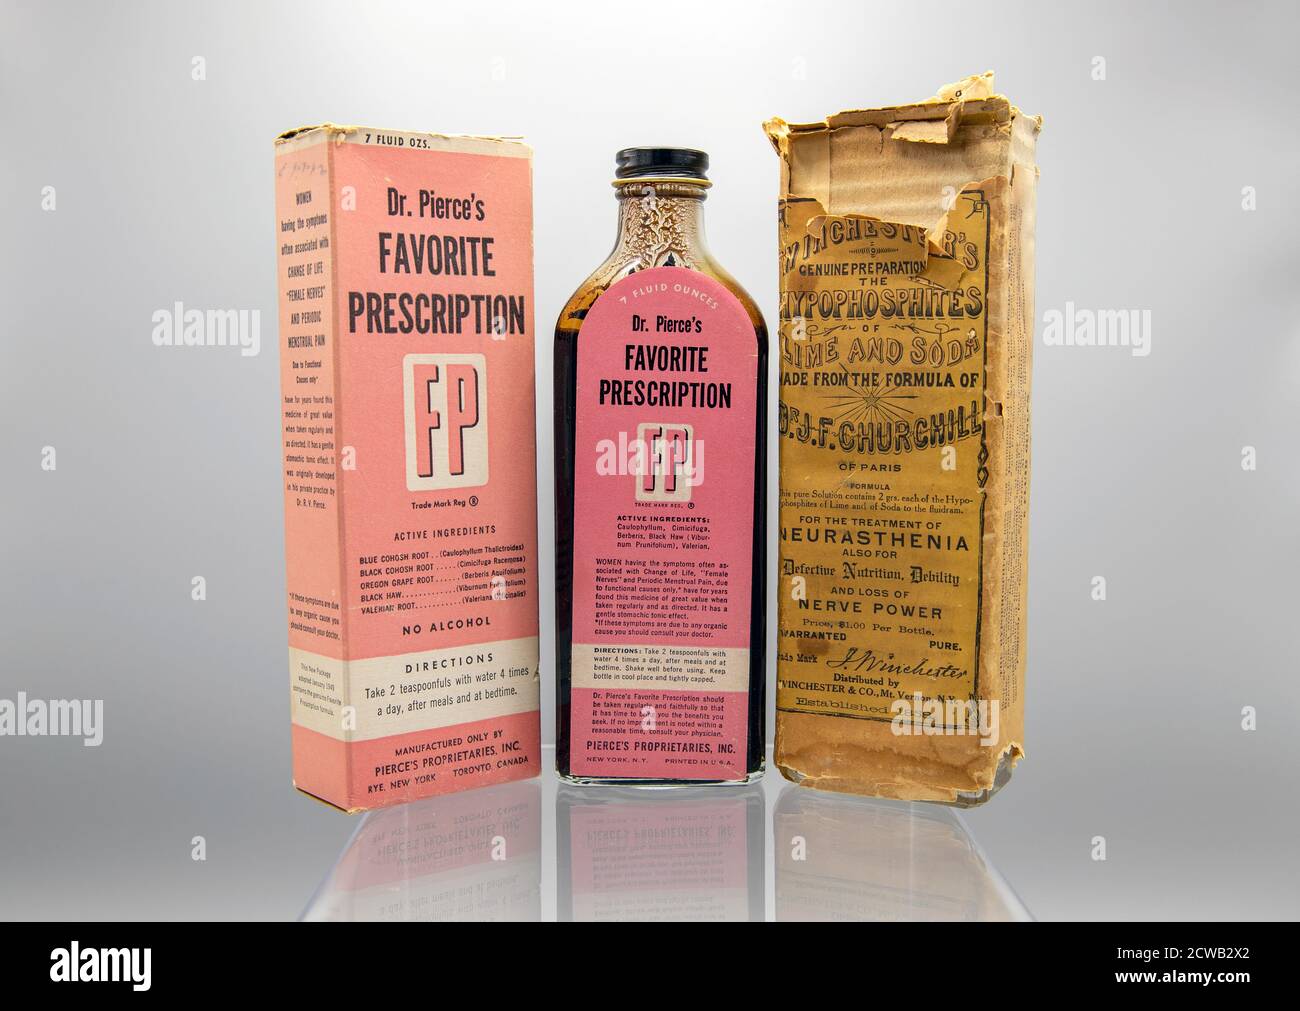 Suchtpotential-Patentmedikamente vor der Verabschiedung des Pure Food and Drugs Act von 1906 waren viele der „Patentmedikamente“ auf dem Markt gefährlich süchtig und enthielten unter anderem Alkohol und Opiate. Viele wurden speziell an Frauen vermarktet, um Probleme im Zusammenhang mit Menstruation, Menopause und „nervöser Erschöpfung“ zu behandeln. Mit der Verabschiedung des Gesetzes von 1906 wurden diese geschlechtsspezifische Vermarktungspraktiken nicht beendet, aber es wurde eine Kennzeichnung benötigt, um das Vorhandensein und die Menge von 11 gefährlichen Inhaltsstoffen zu identifizieren. Stockfoto